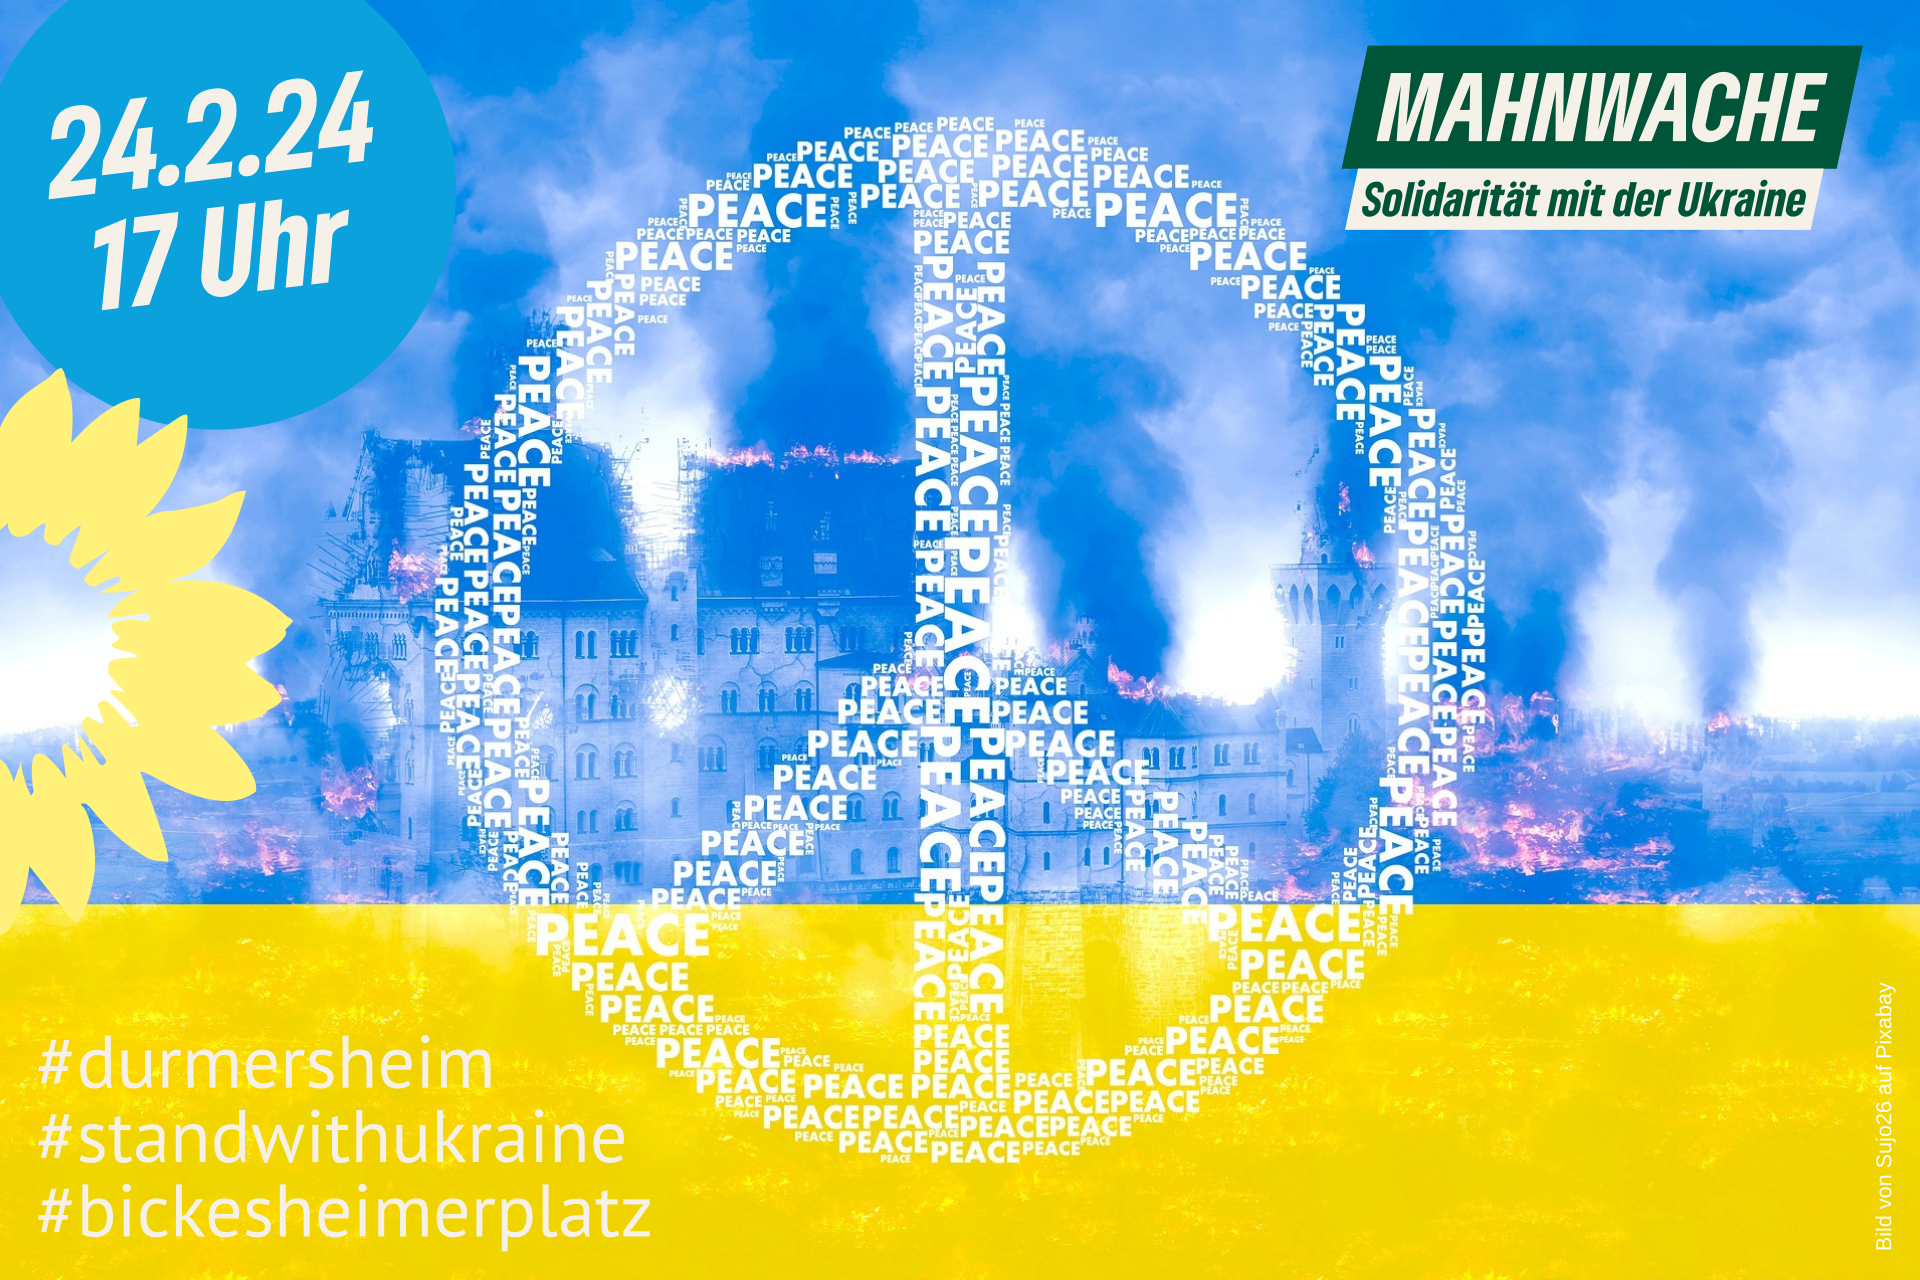 Mahnwache Solidarität mit der Ukraine in Durmersheim B90/Grüne - BuG - CDU - FWG - SPD